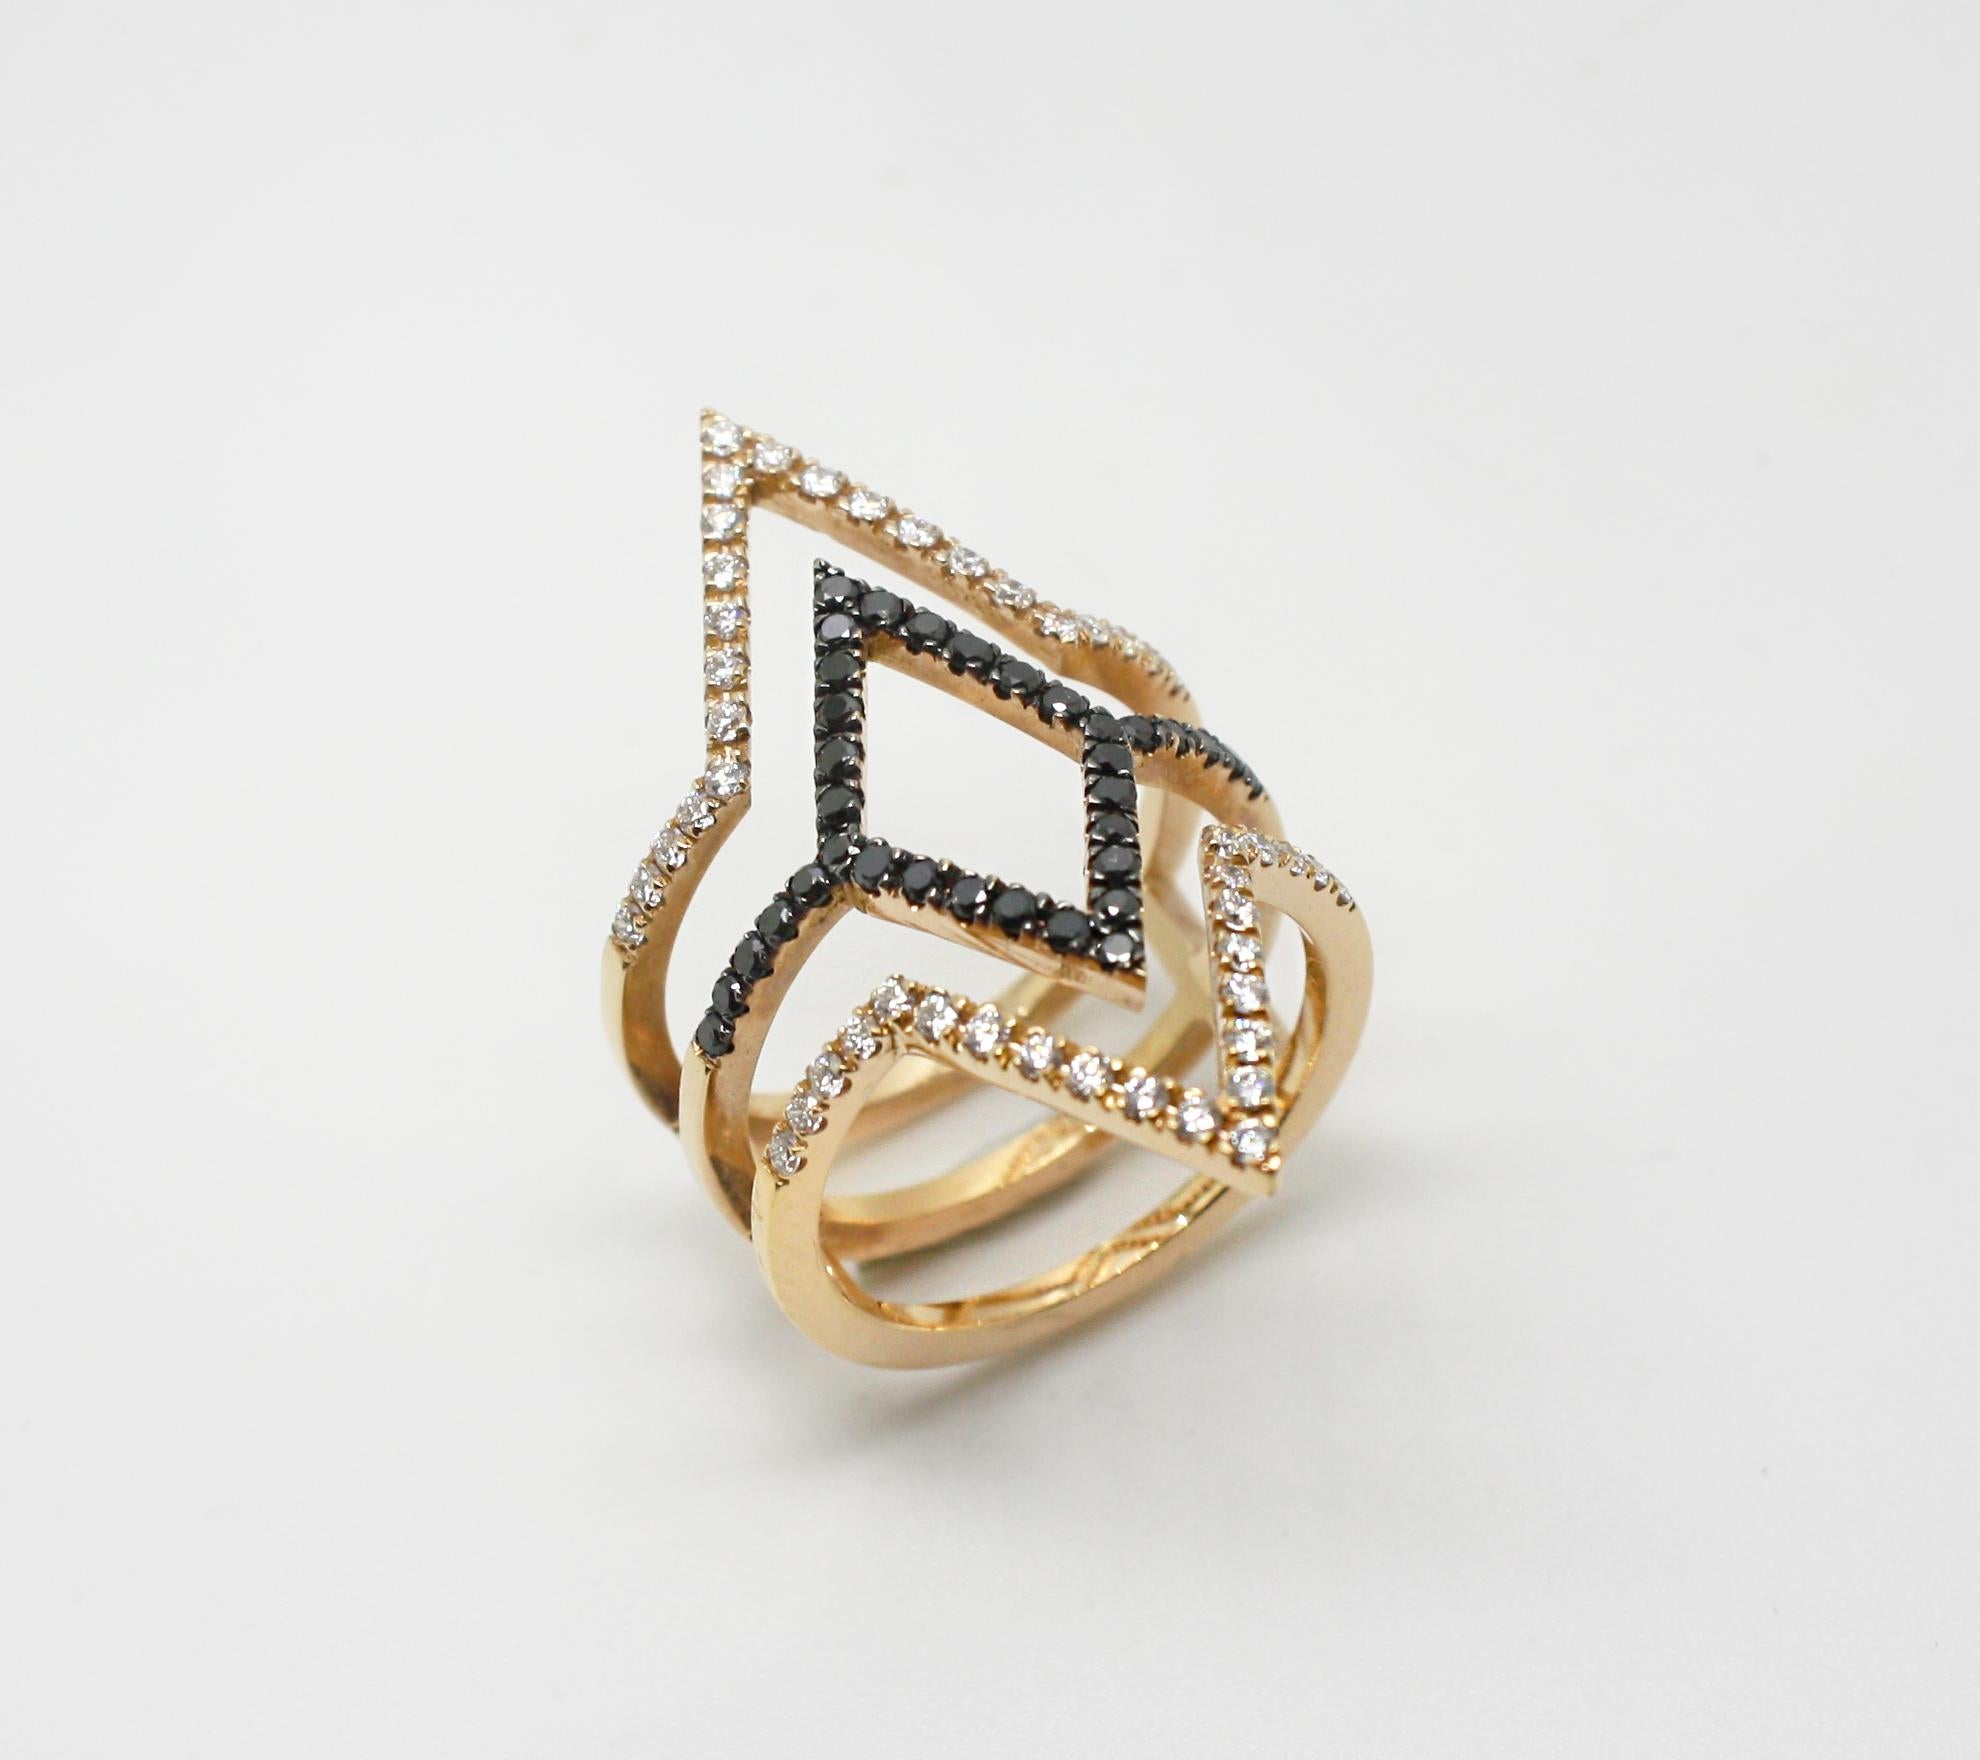 S.Georgios Designer 18 Karat Rose Gold Black and White Diamond Ring sind alle handgefertigt in einer einzigartigen Spirale Design und haben die schwarzen Diamanten in schwarzem Rhodium Zacken geben ihm einen atemberaubenden Blick gesetzt. 
Der